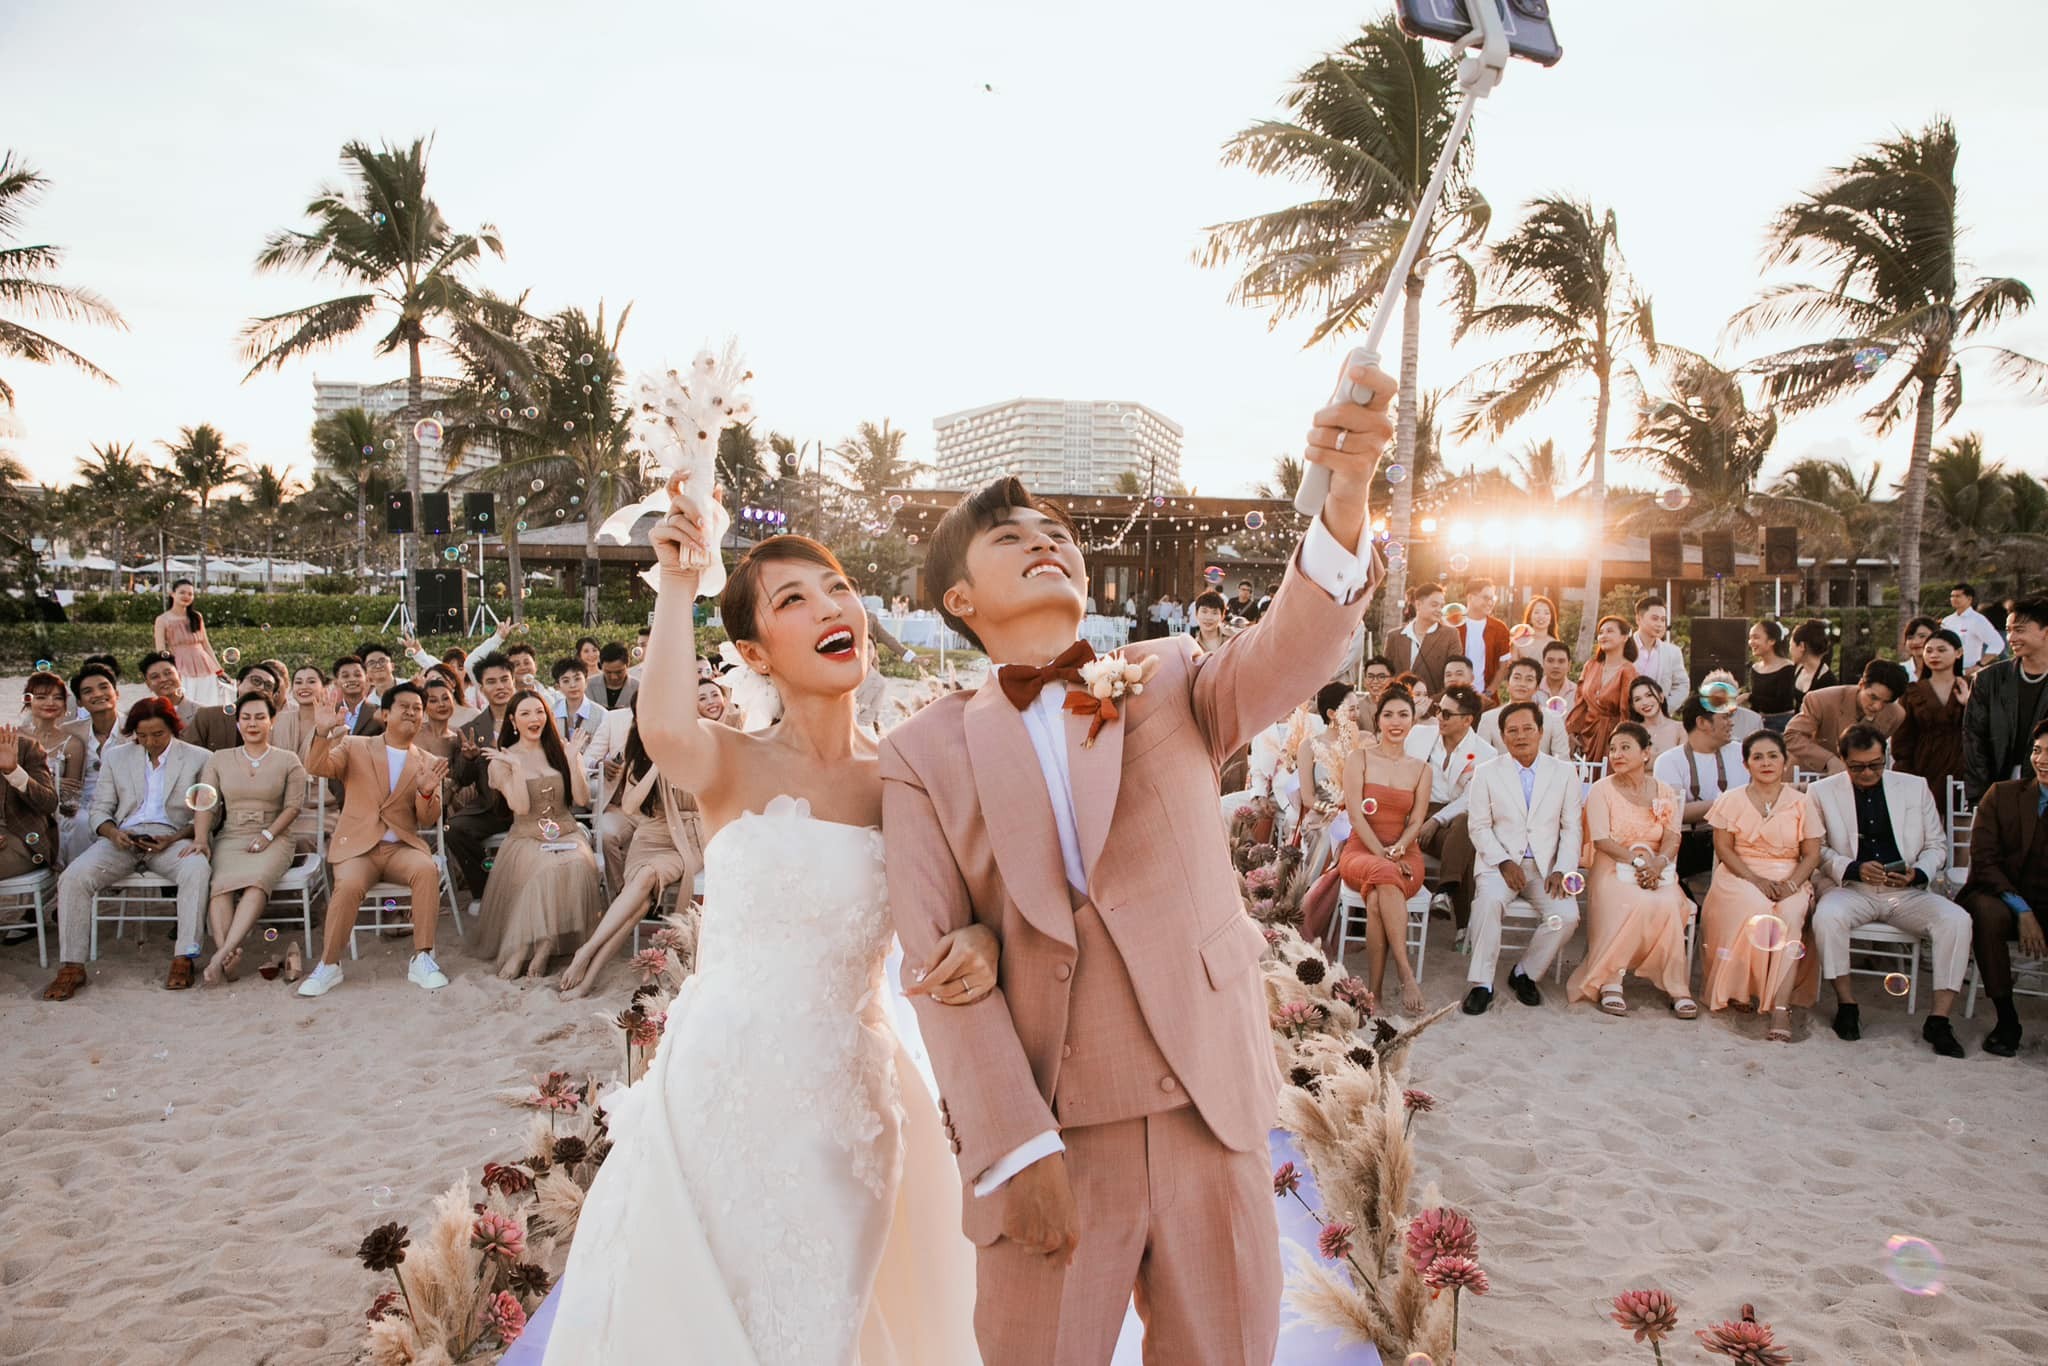 Du lịch biển đảo kết hợp đám cưới ở Việt Nam có nhiều cơ hội phát triển